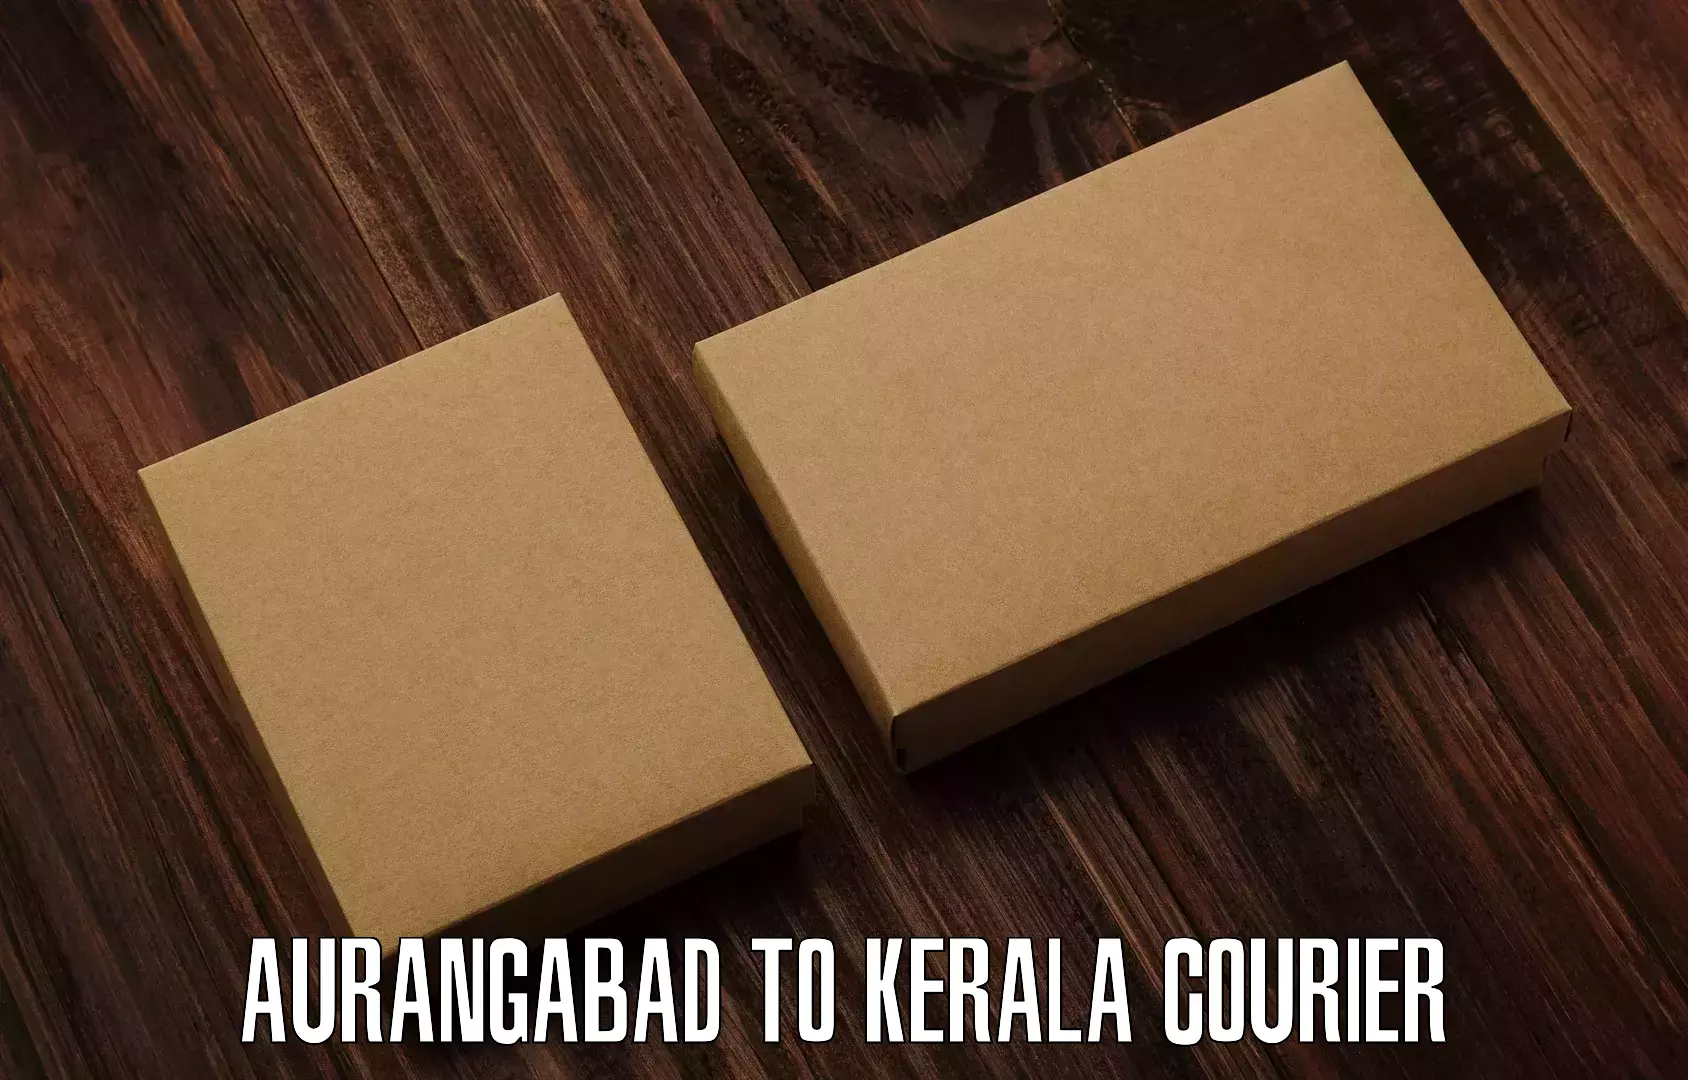 Efficient cargo services Aurangabad to Kannur